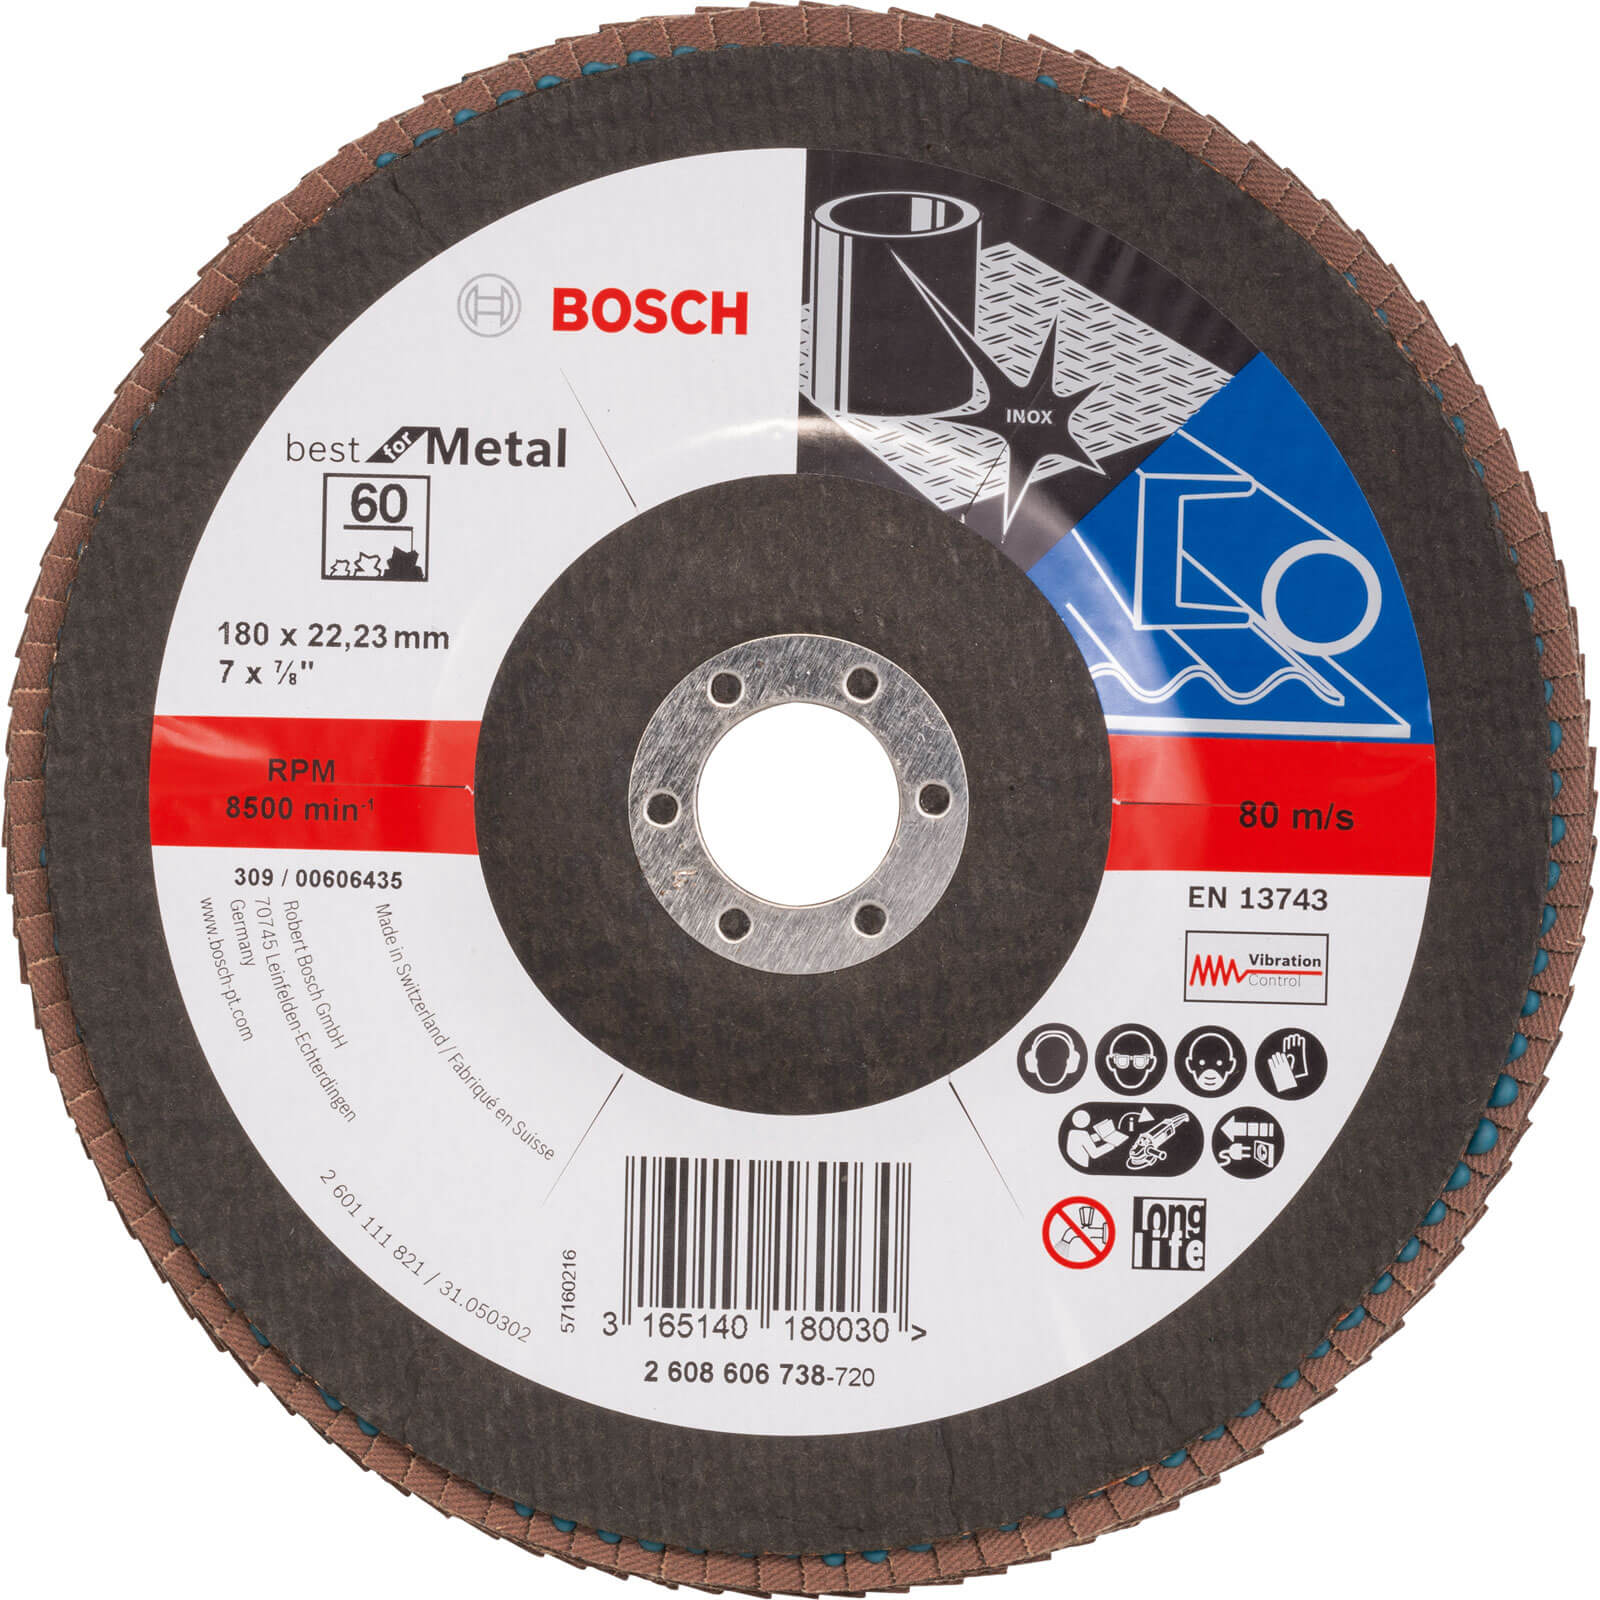 Photos - Cutting Disc Bosch Zirconium Abrasive Flap Disc 180mm 60g 